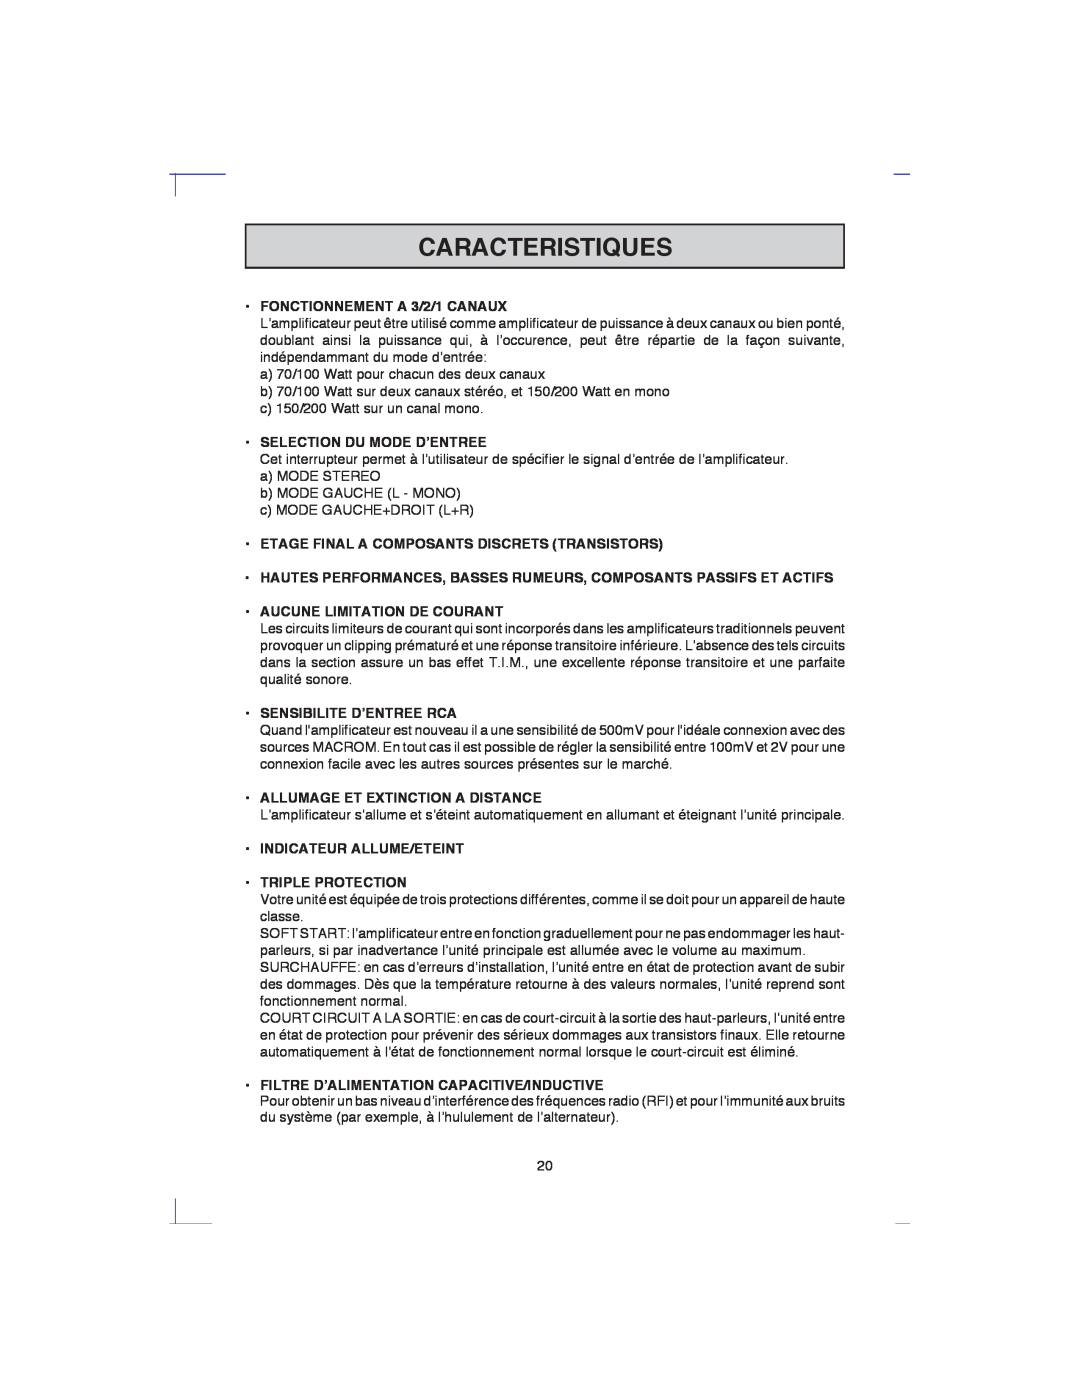 Macrom 42.17 Caracteristiques, FONCTIONNEMENT A 3/2/1 CANAUX, Selection Du Mode D’Entree, Aucune Limitation De Courant 